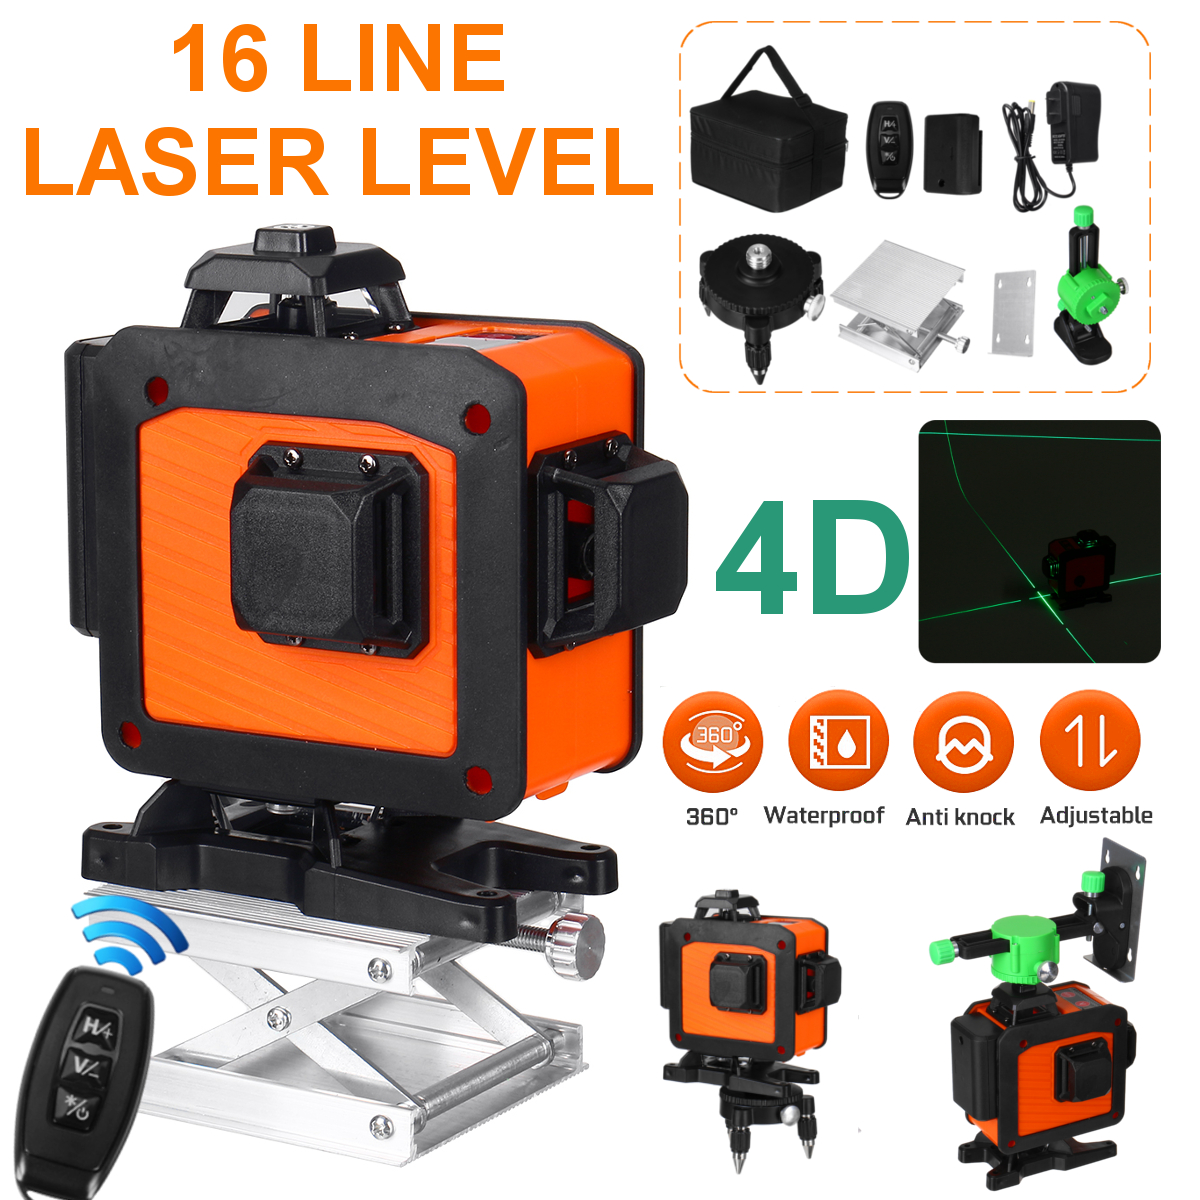 16-Line-Laser-Level-Green-Light-Auto-Self-Leveling-Cross-360deg-Rotary-Measuring-1740210-1